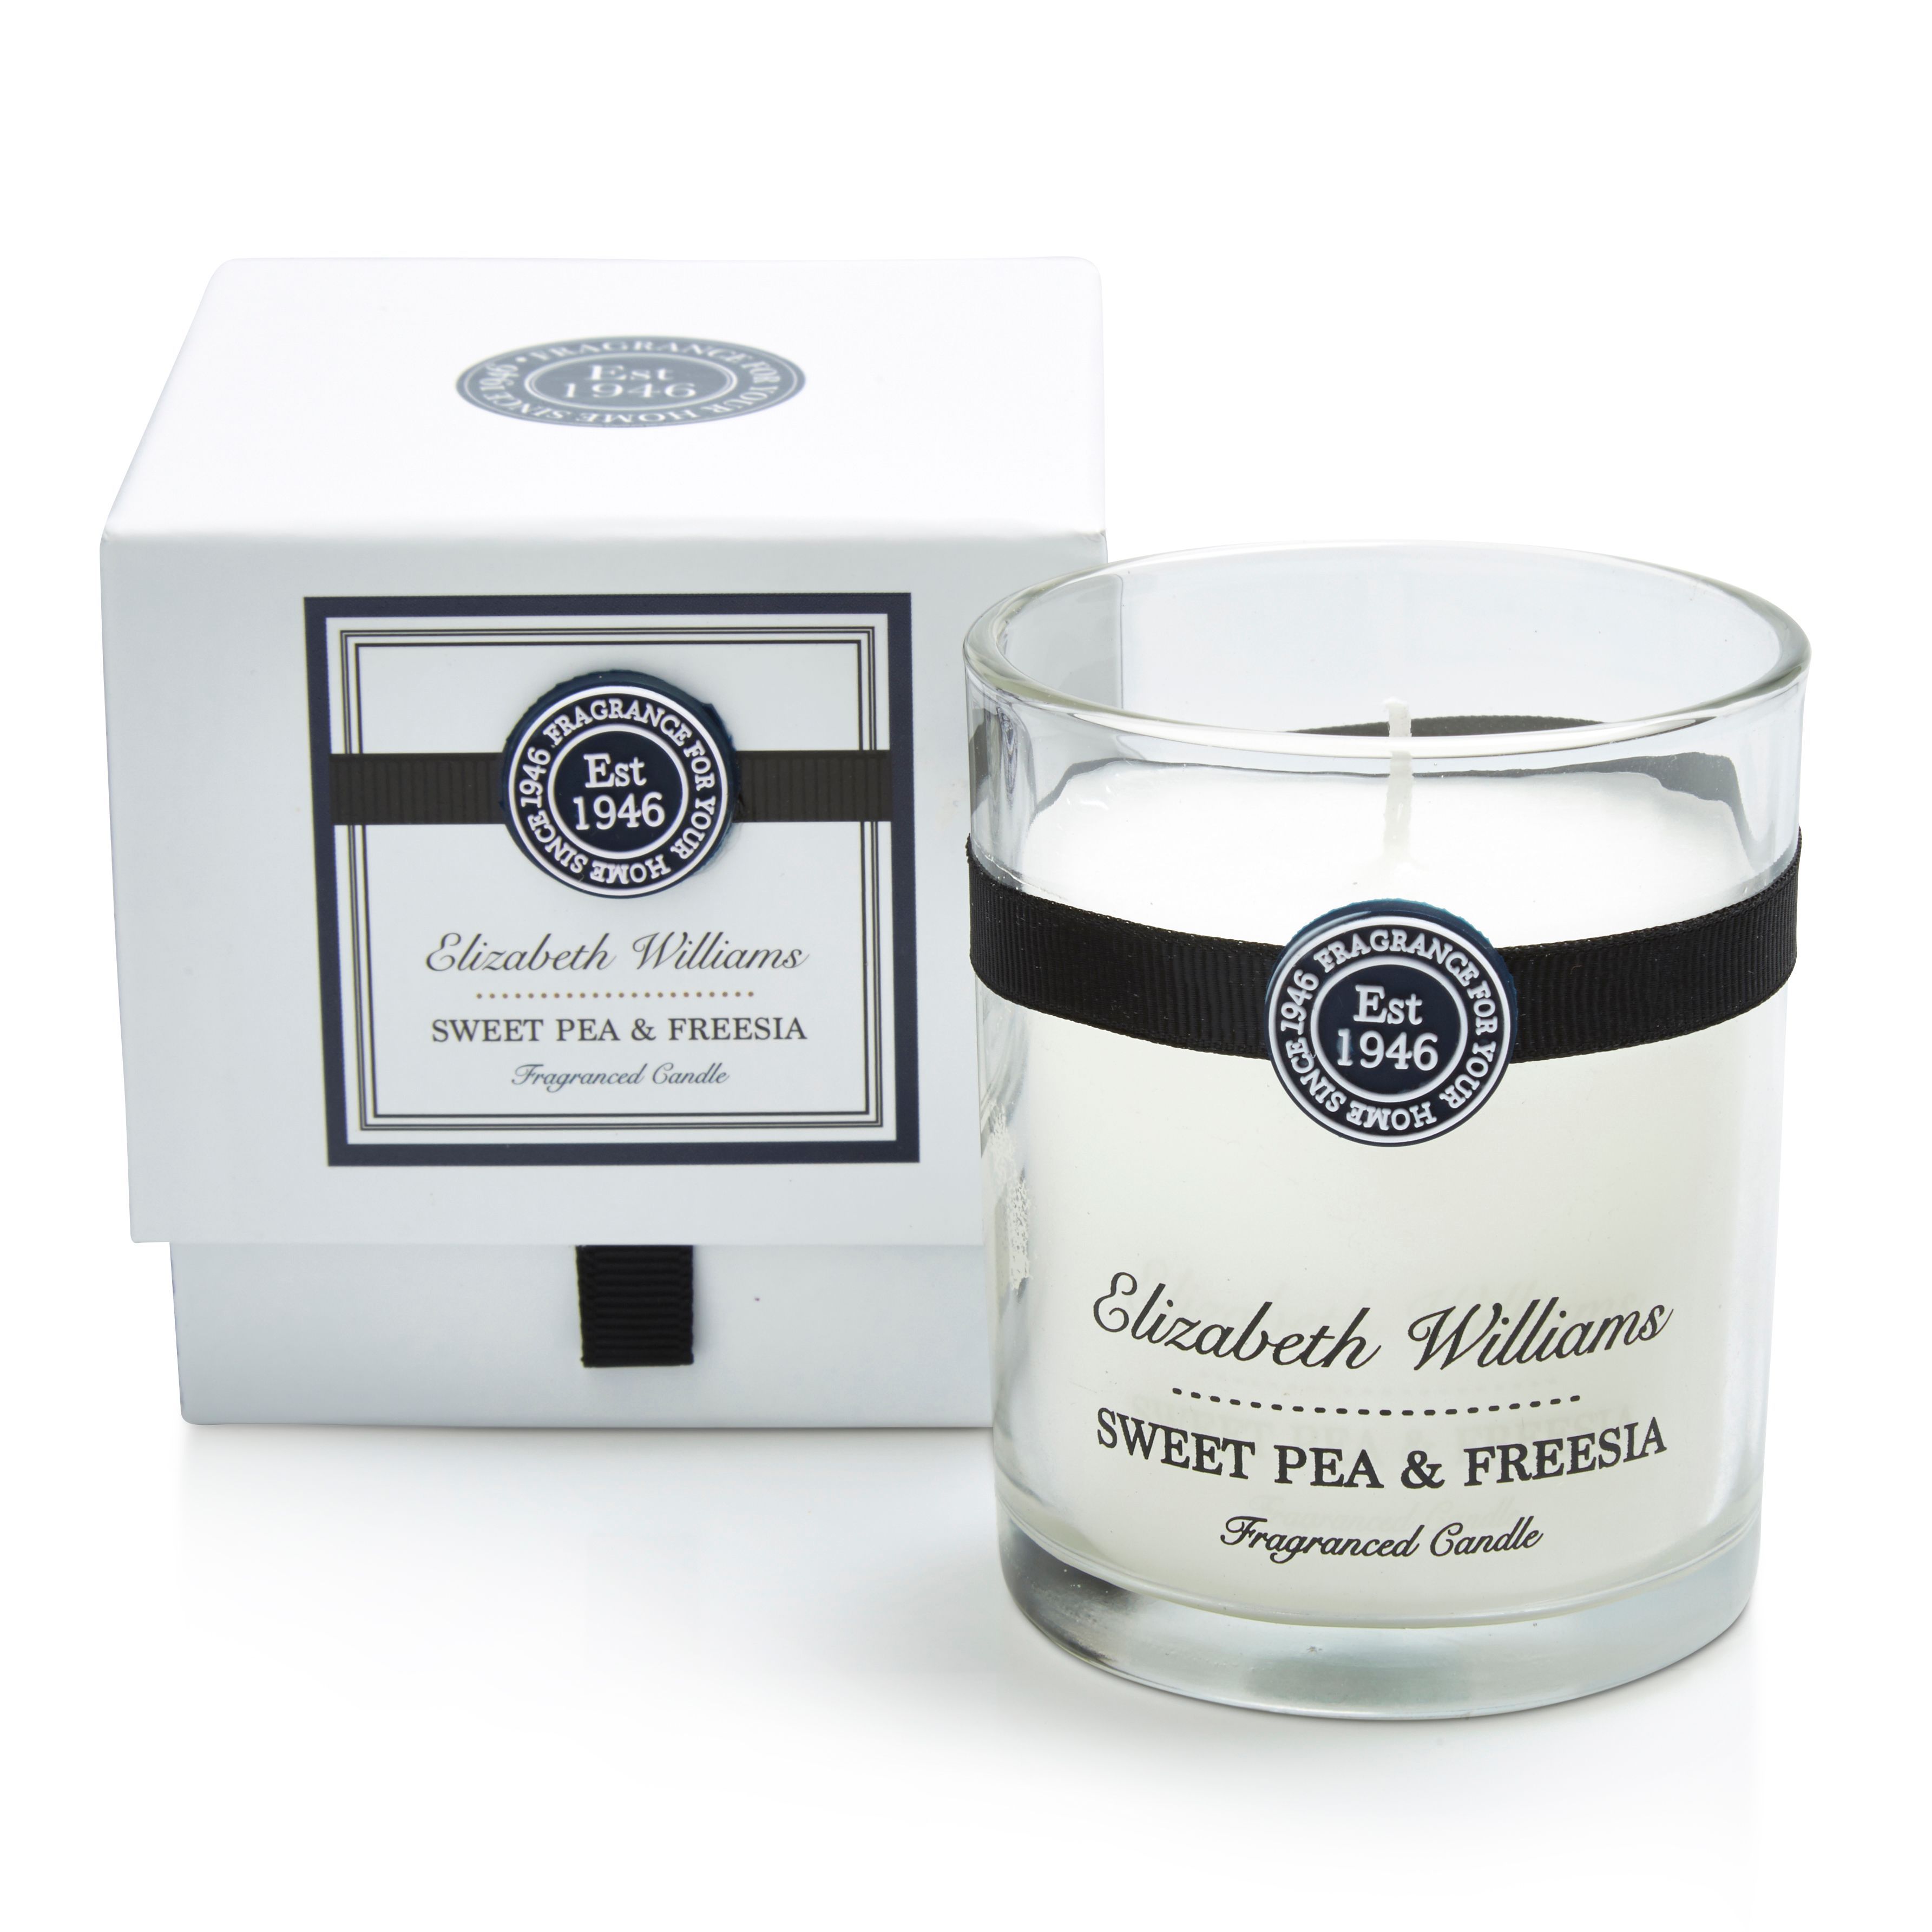 Elizabeth Williams Sweet pea & freesia Boxed jar candle